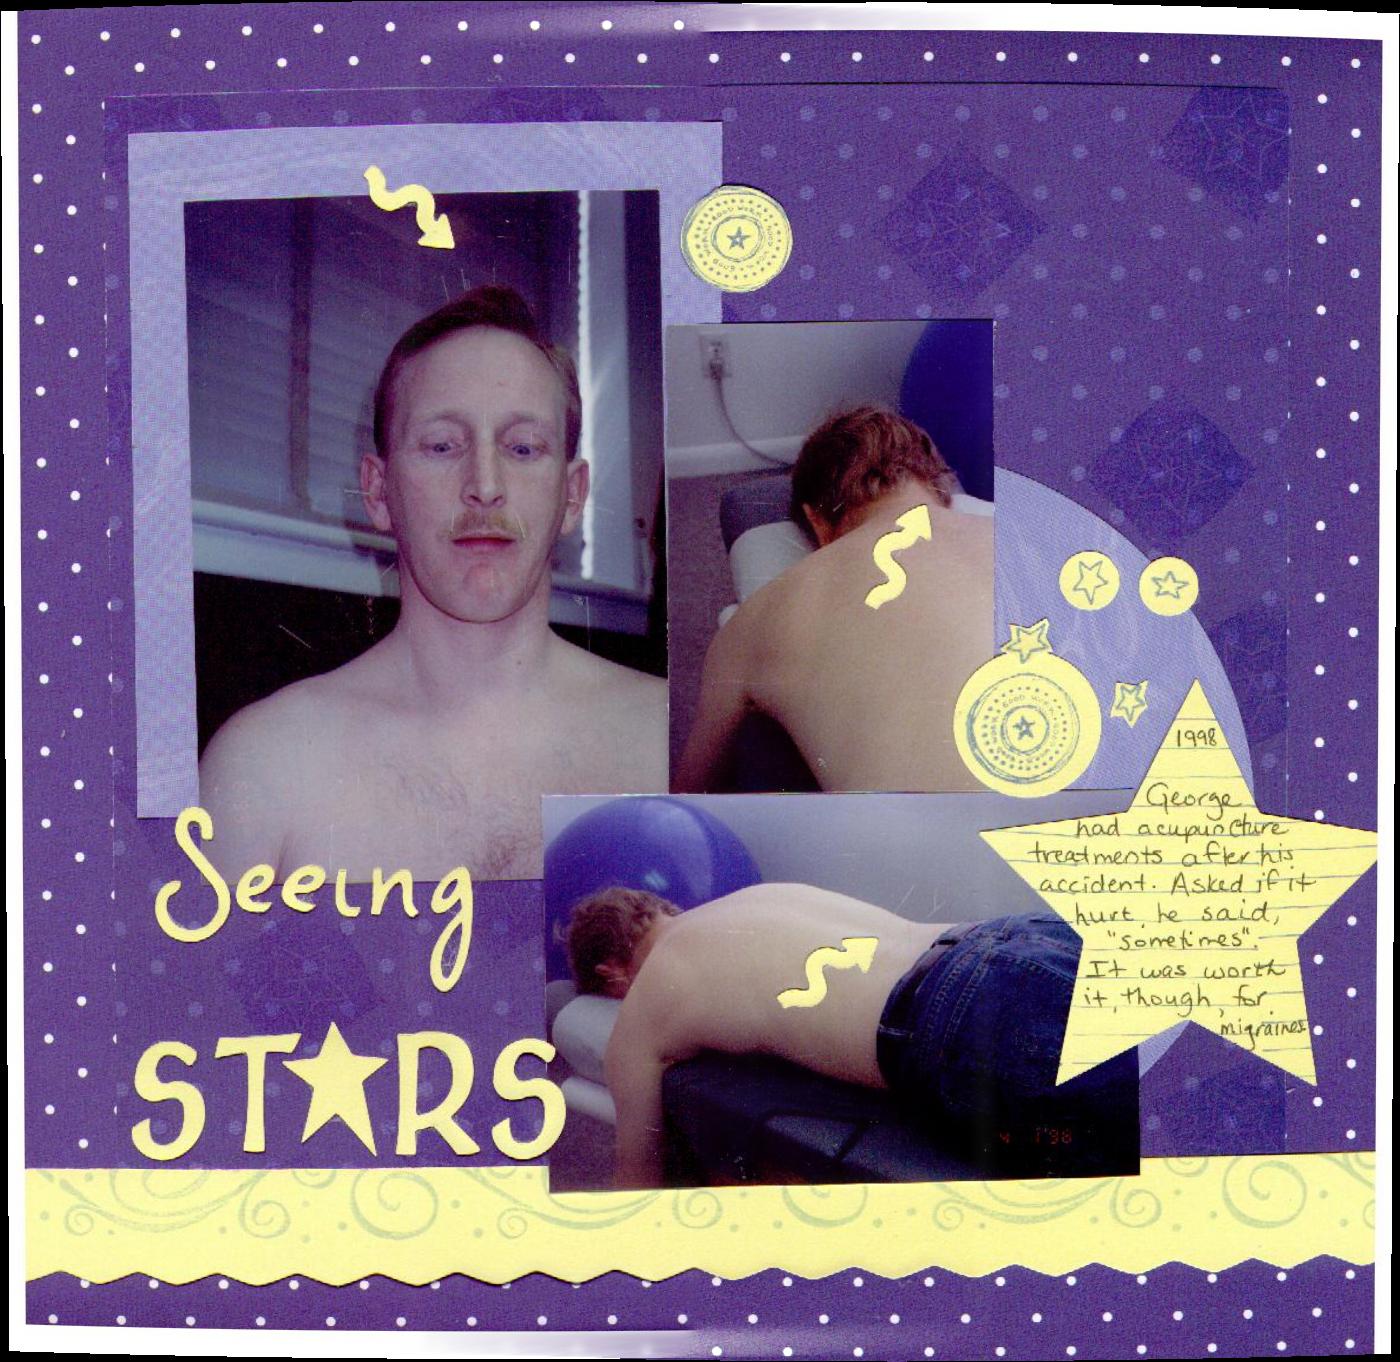 [Seeing+Stars.jpg]